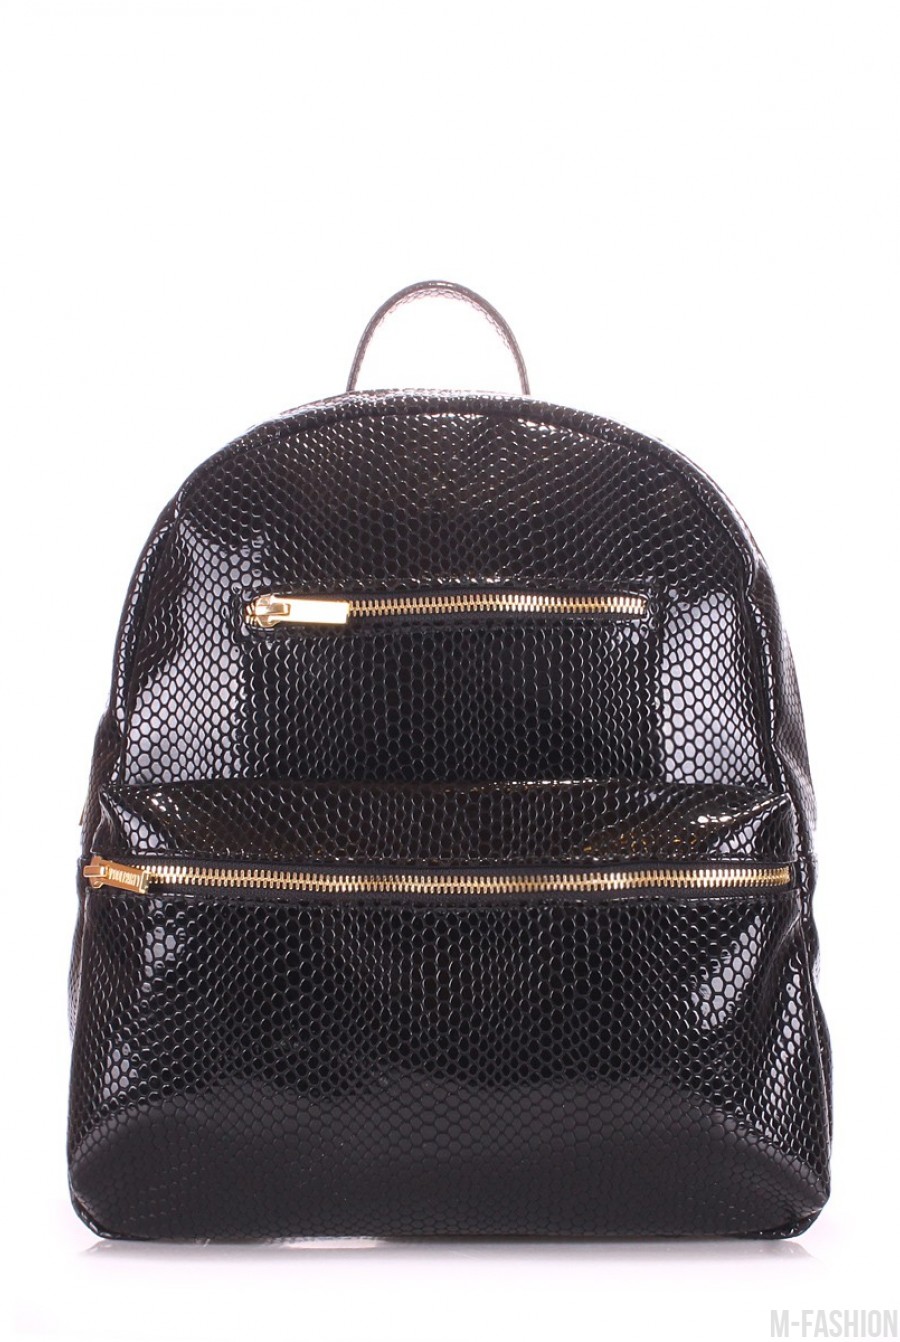 Черный кожаный рюкзак с рисунком под рептилию - Фото 1